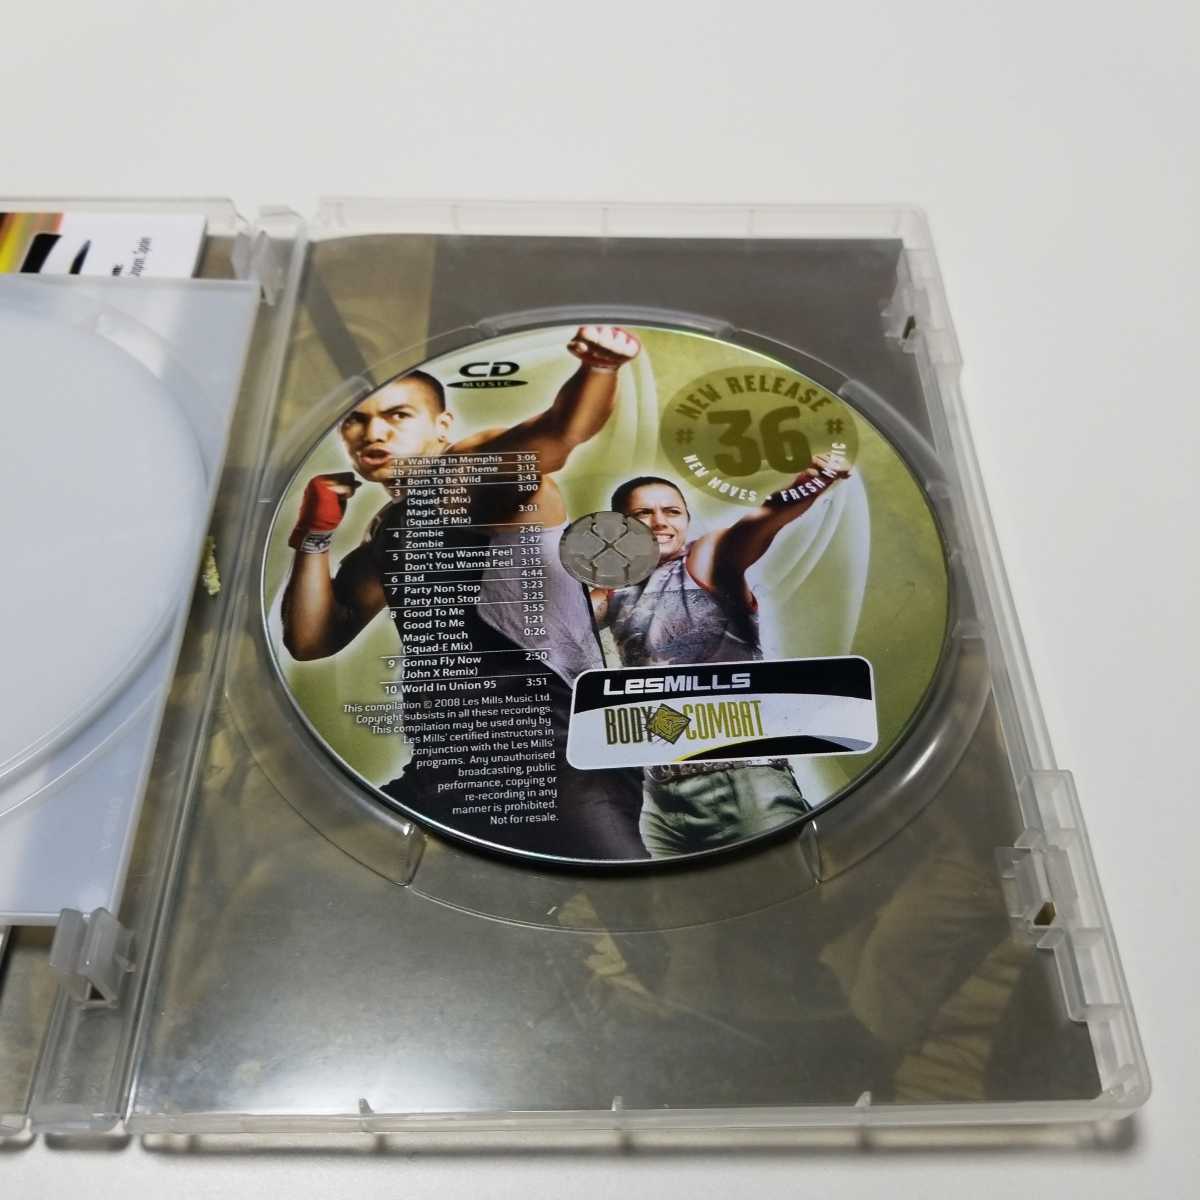 再生検査済！正規品 レスミルズ ボディコンバット 36 DVD CD ノート ゴールドジム ダイエット 格闘 リーボック コナミ ボクシング 筋トレ 